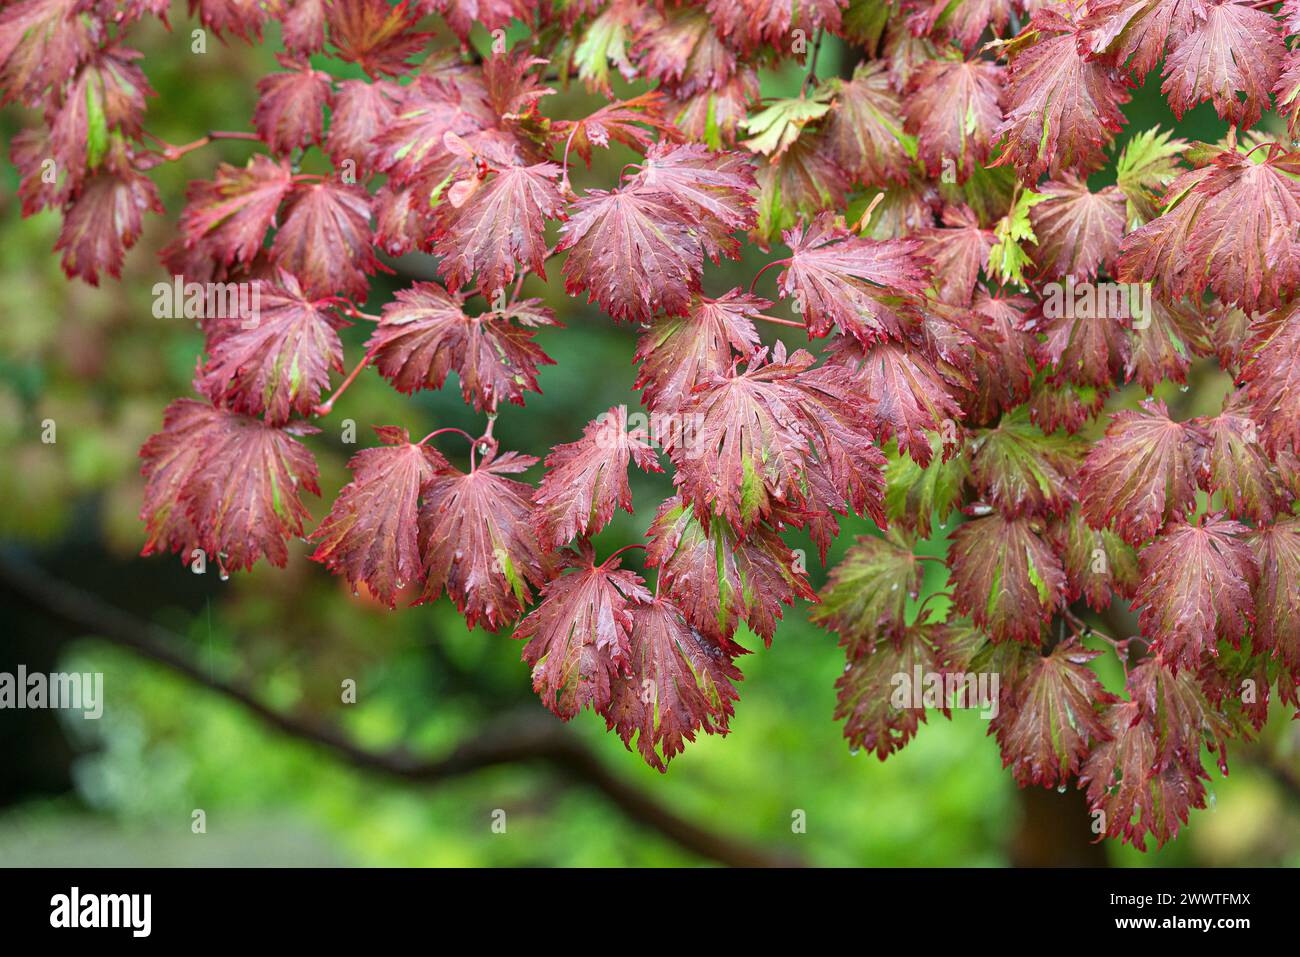 Japanese maple (Acer japonicum 'Aconitifolium', Acer japonicum Aconitifolium), Leaves in the fall of the cultivar Aconitifolium Stock Photo